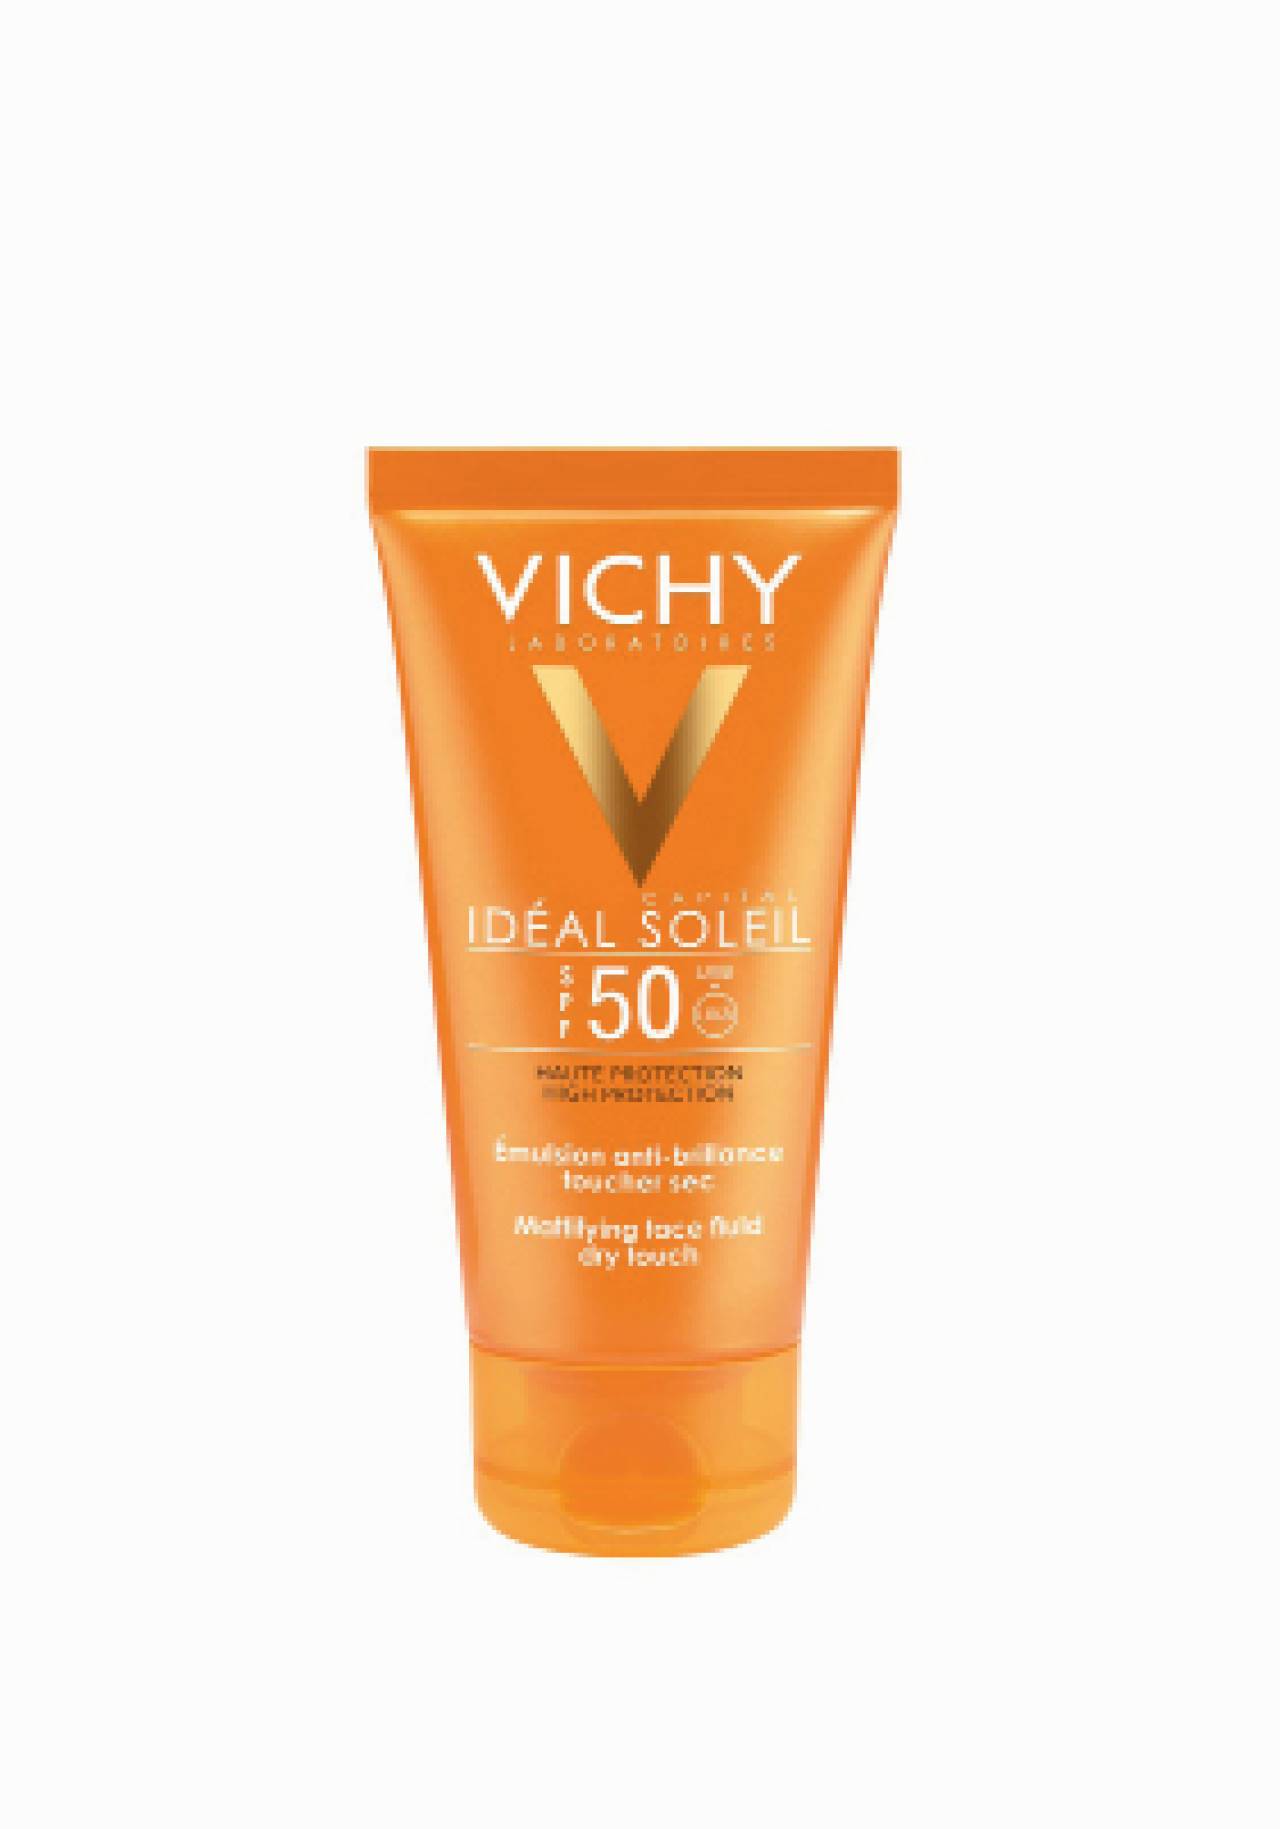 Vichy Ideal Soleil FPS 50 Emulsión anti-brillo toque seco Protector solar facial de farmacia por menso de 15€